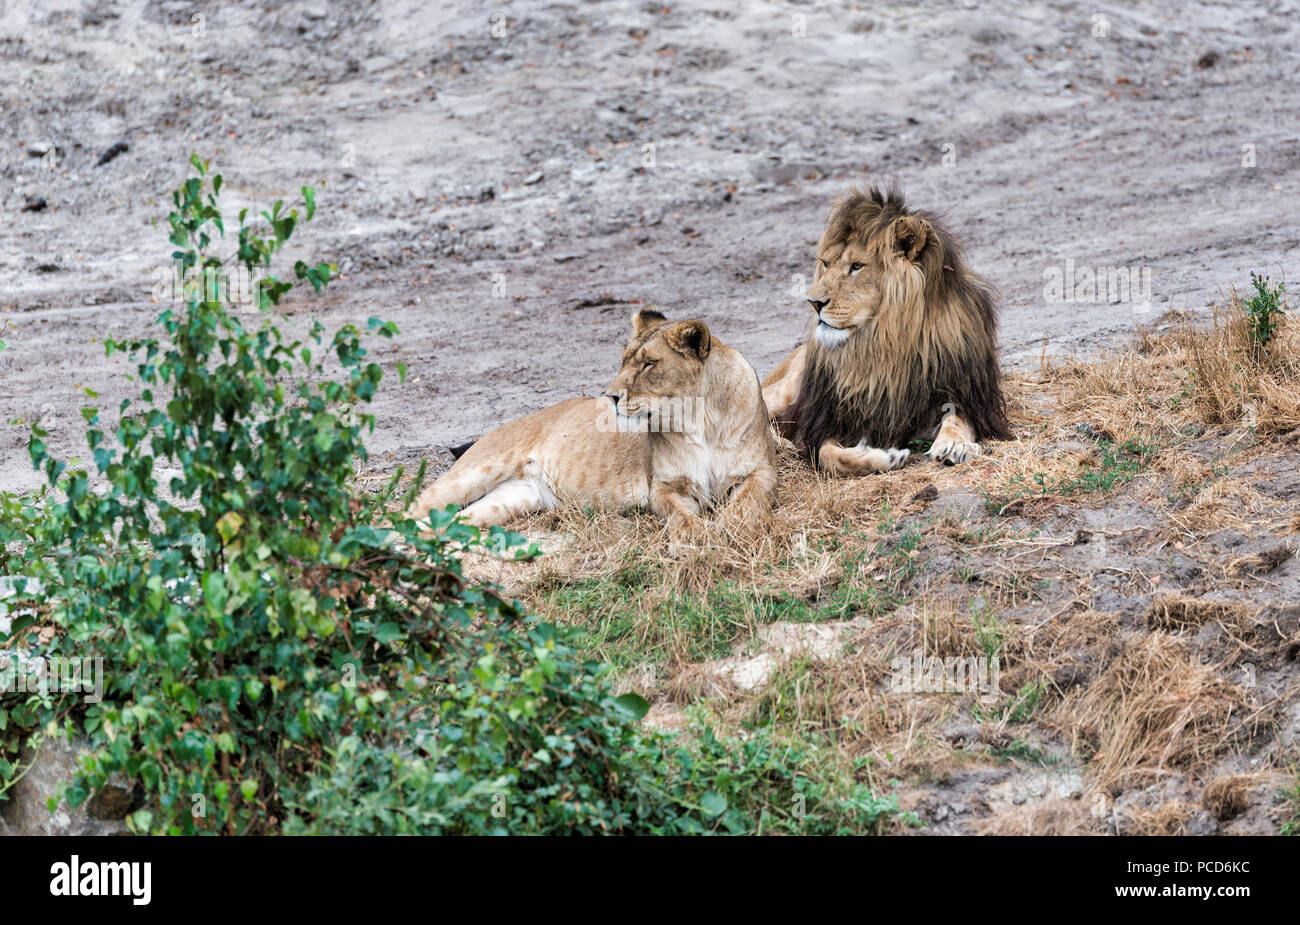 La pareja masculina y femenina de león africano visto en safari Foto de stock